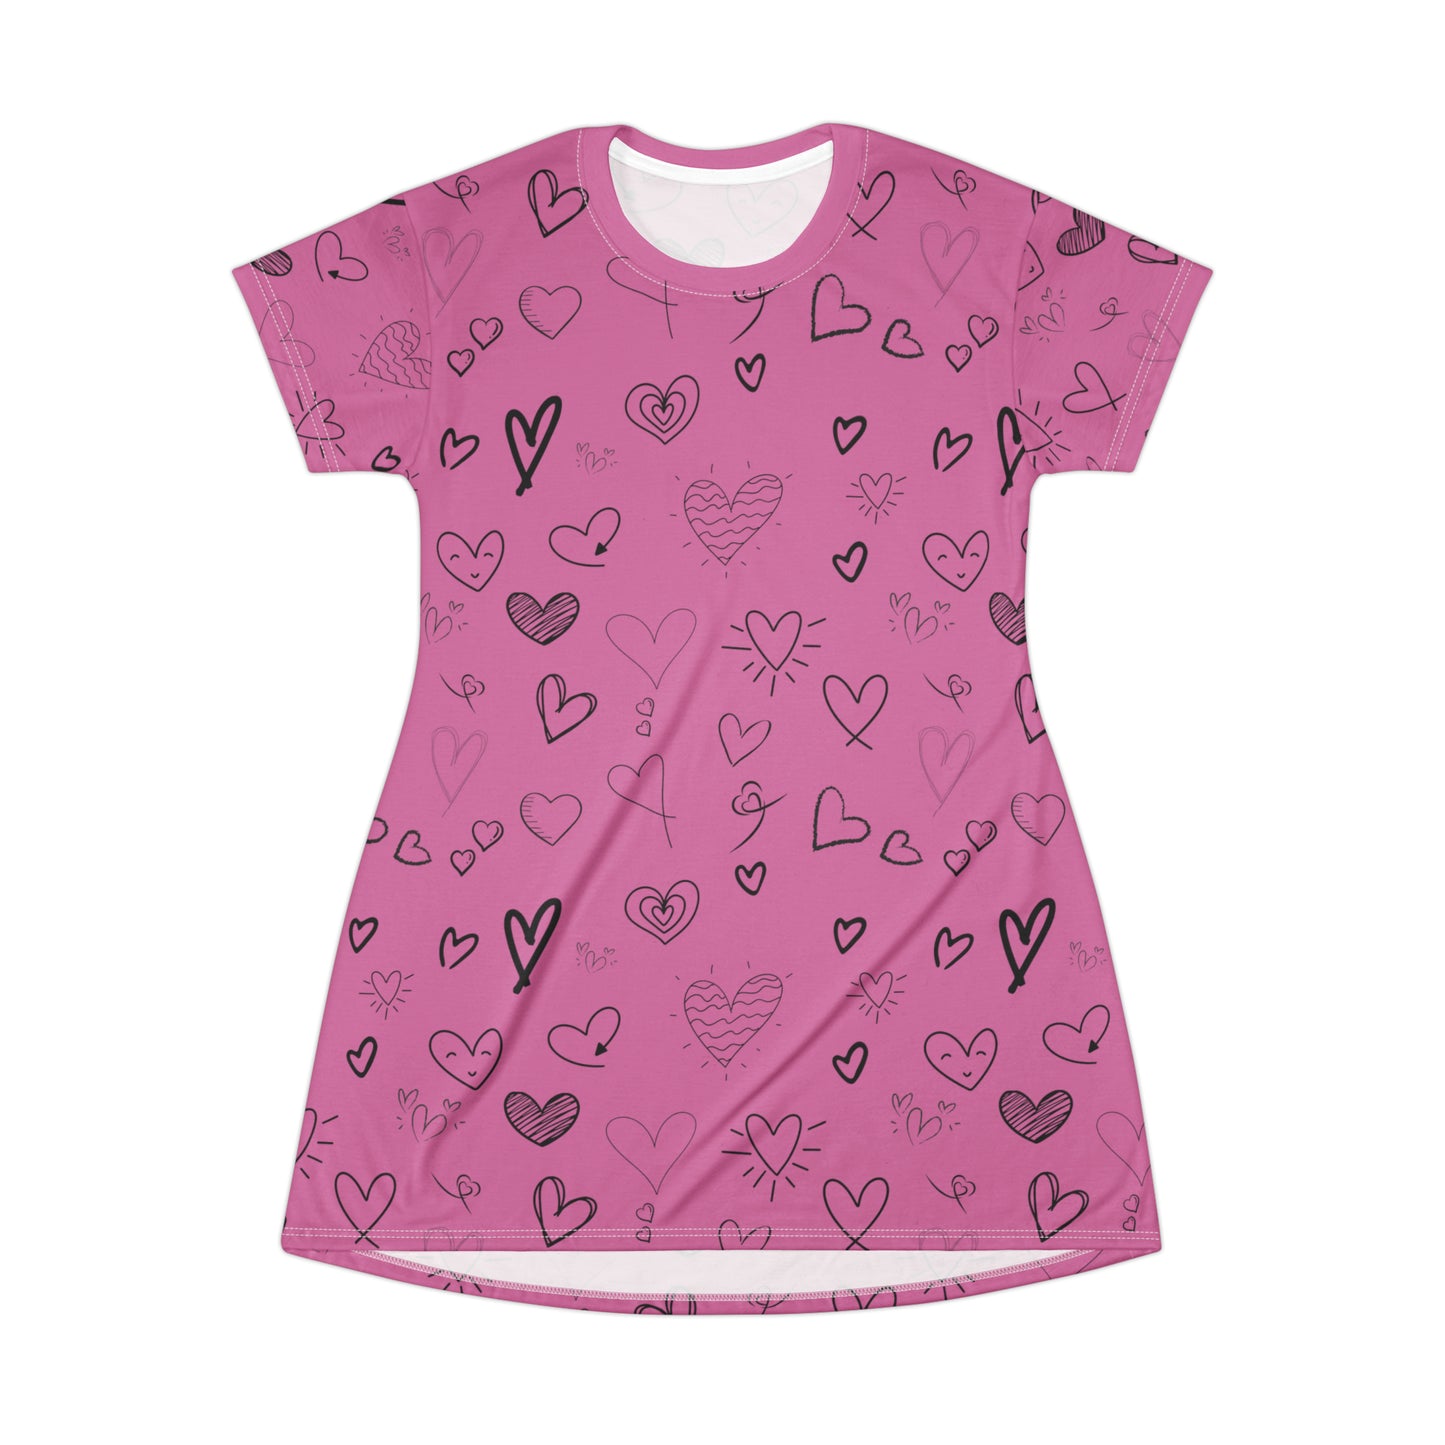 Hearts all over T-Shirt Dress - Light Pink